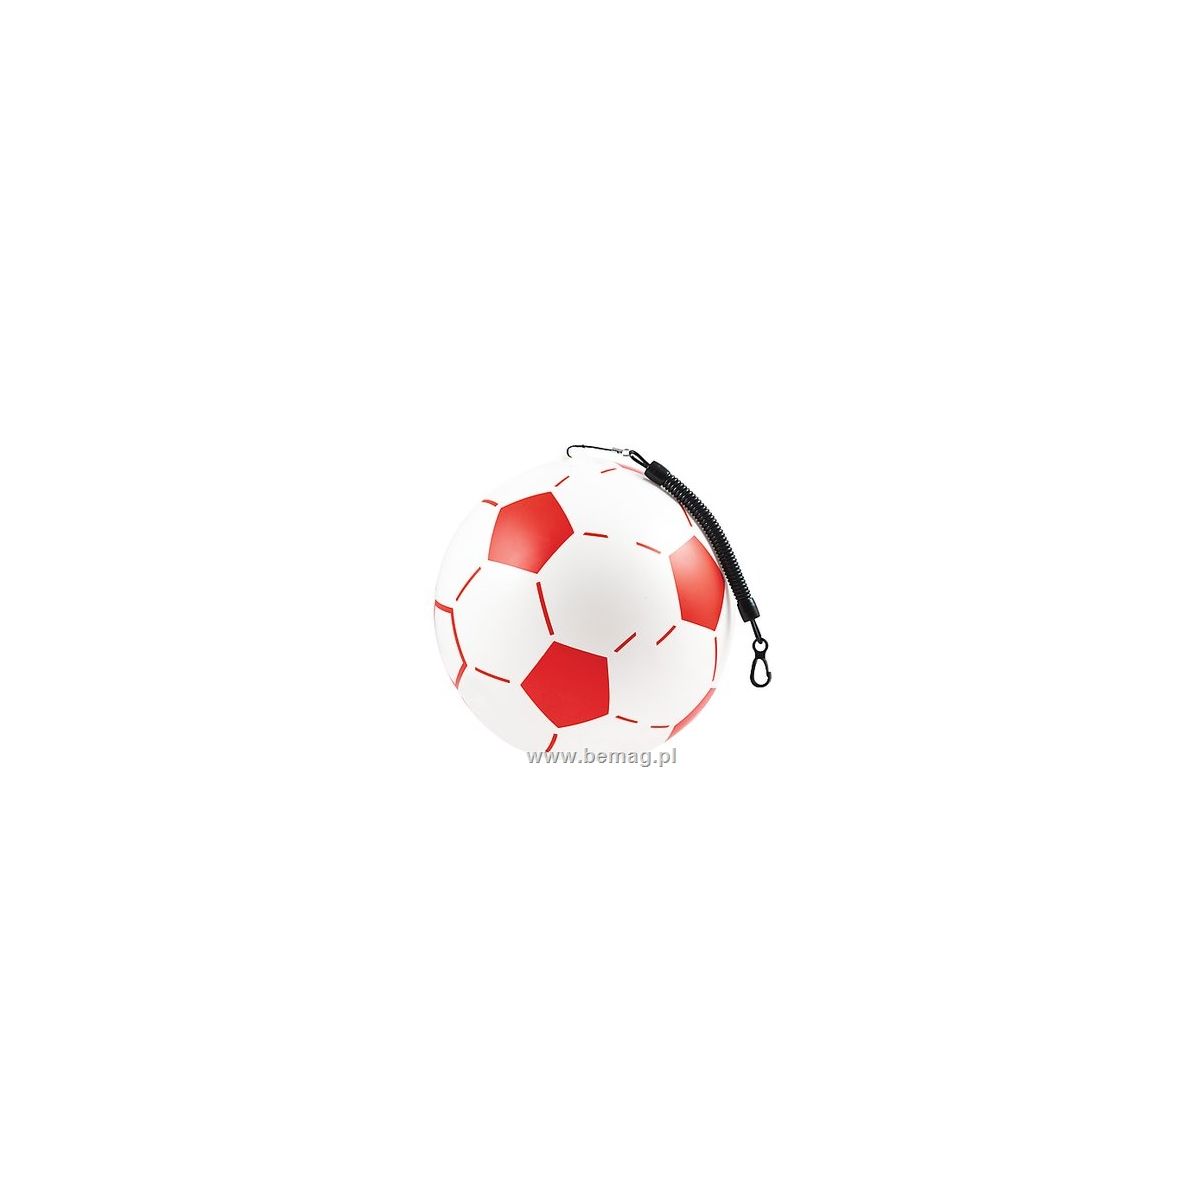 Piłka miękka gumowa Bemag Sprężyna biało czerwona (61154)